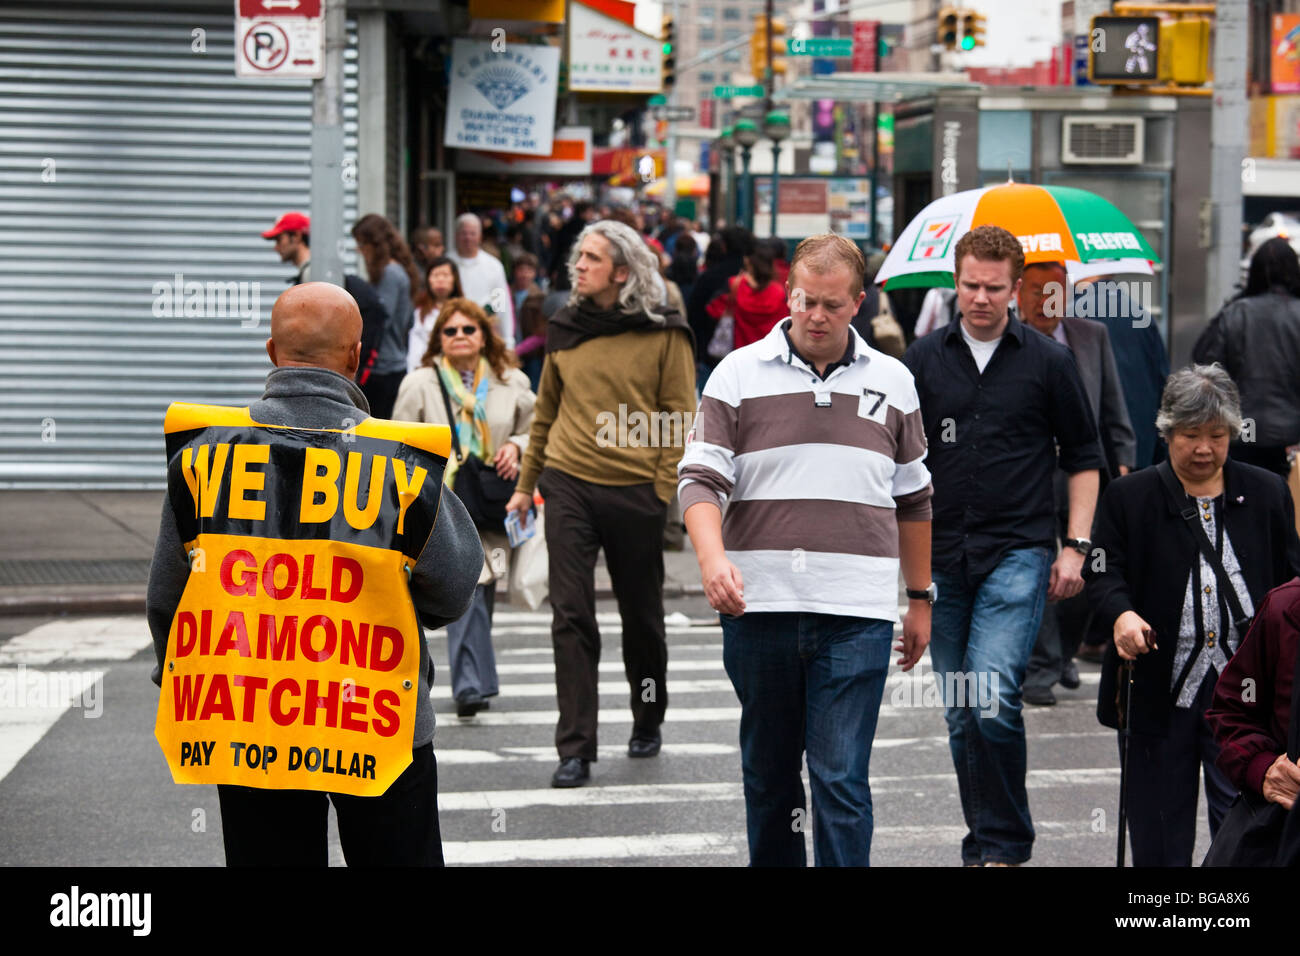 We Buy Gold, Diamond, Watches in Manhattan, New York City Stock Photo